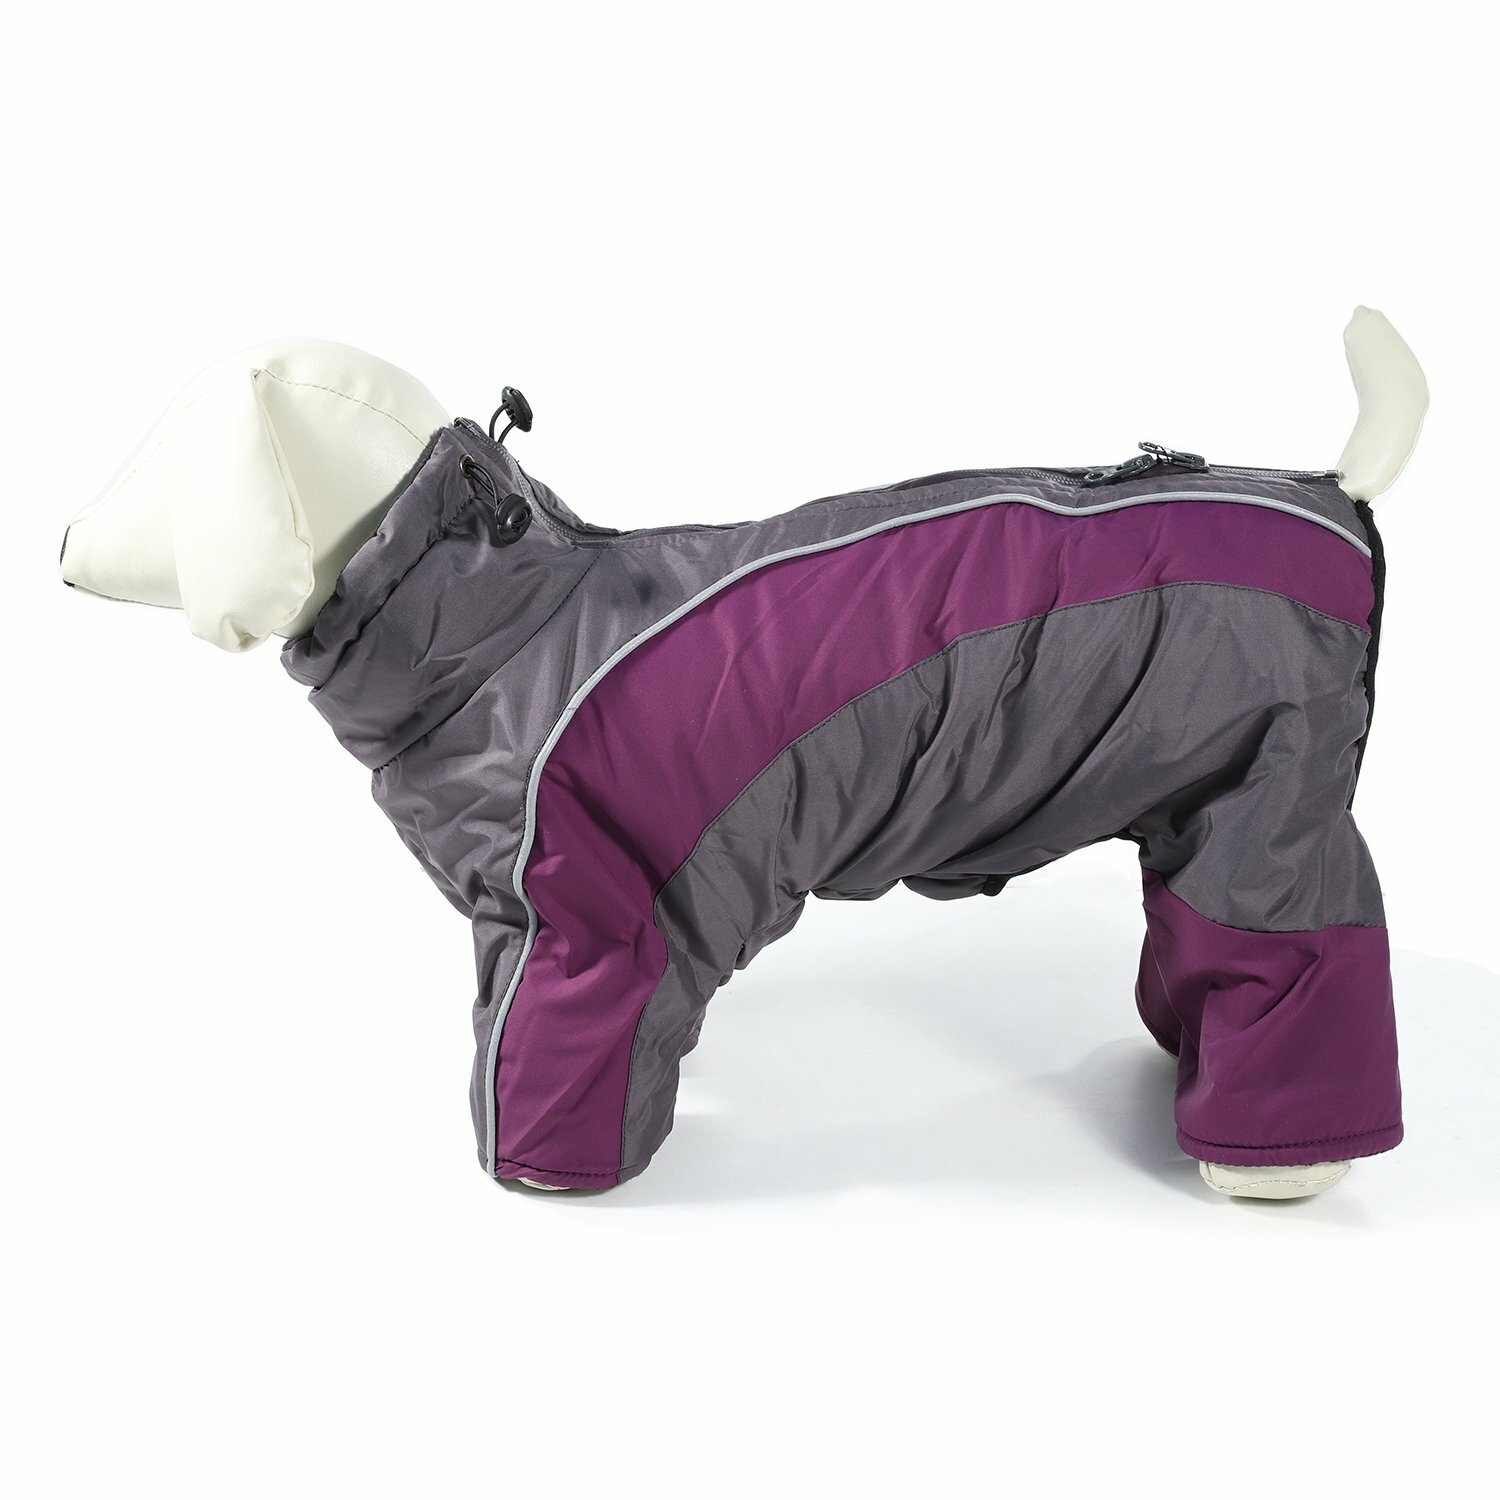 Одежда для собак ДоГГон смарт Нано комбинезон зимний Long Sleeve Sycamore 50см, фиолетовый индиго